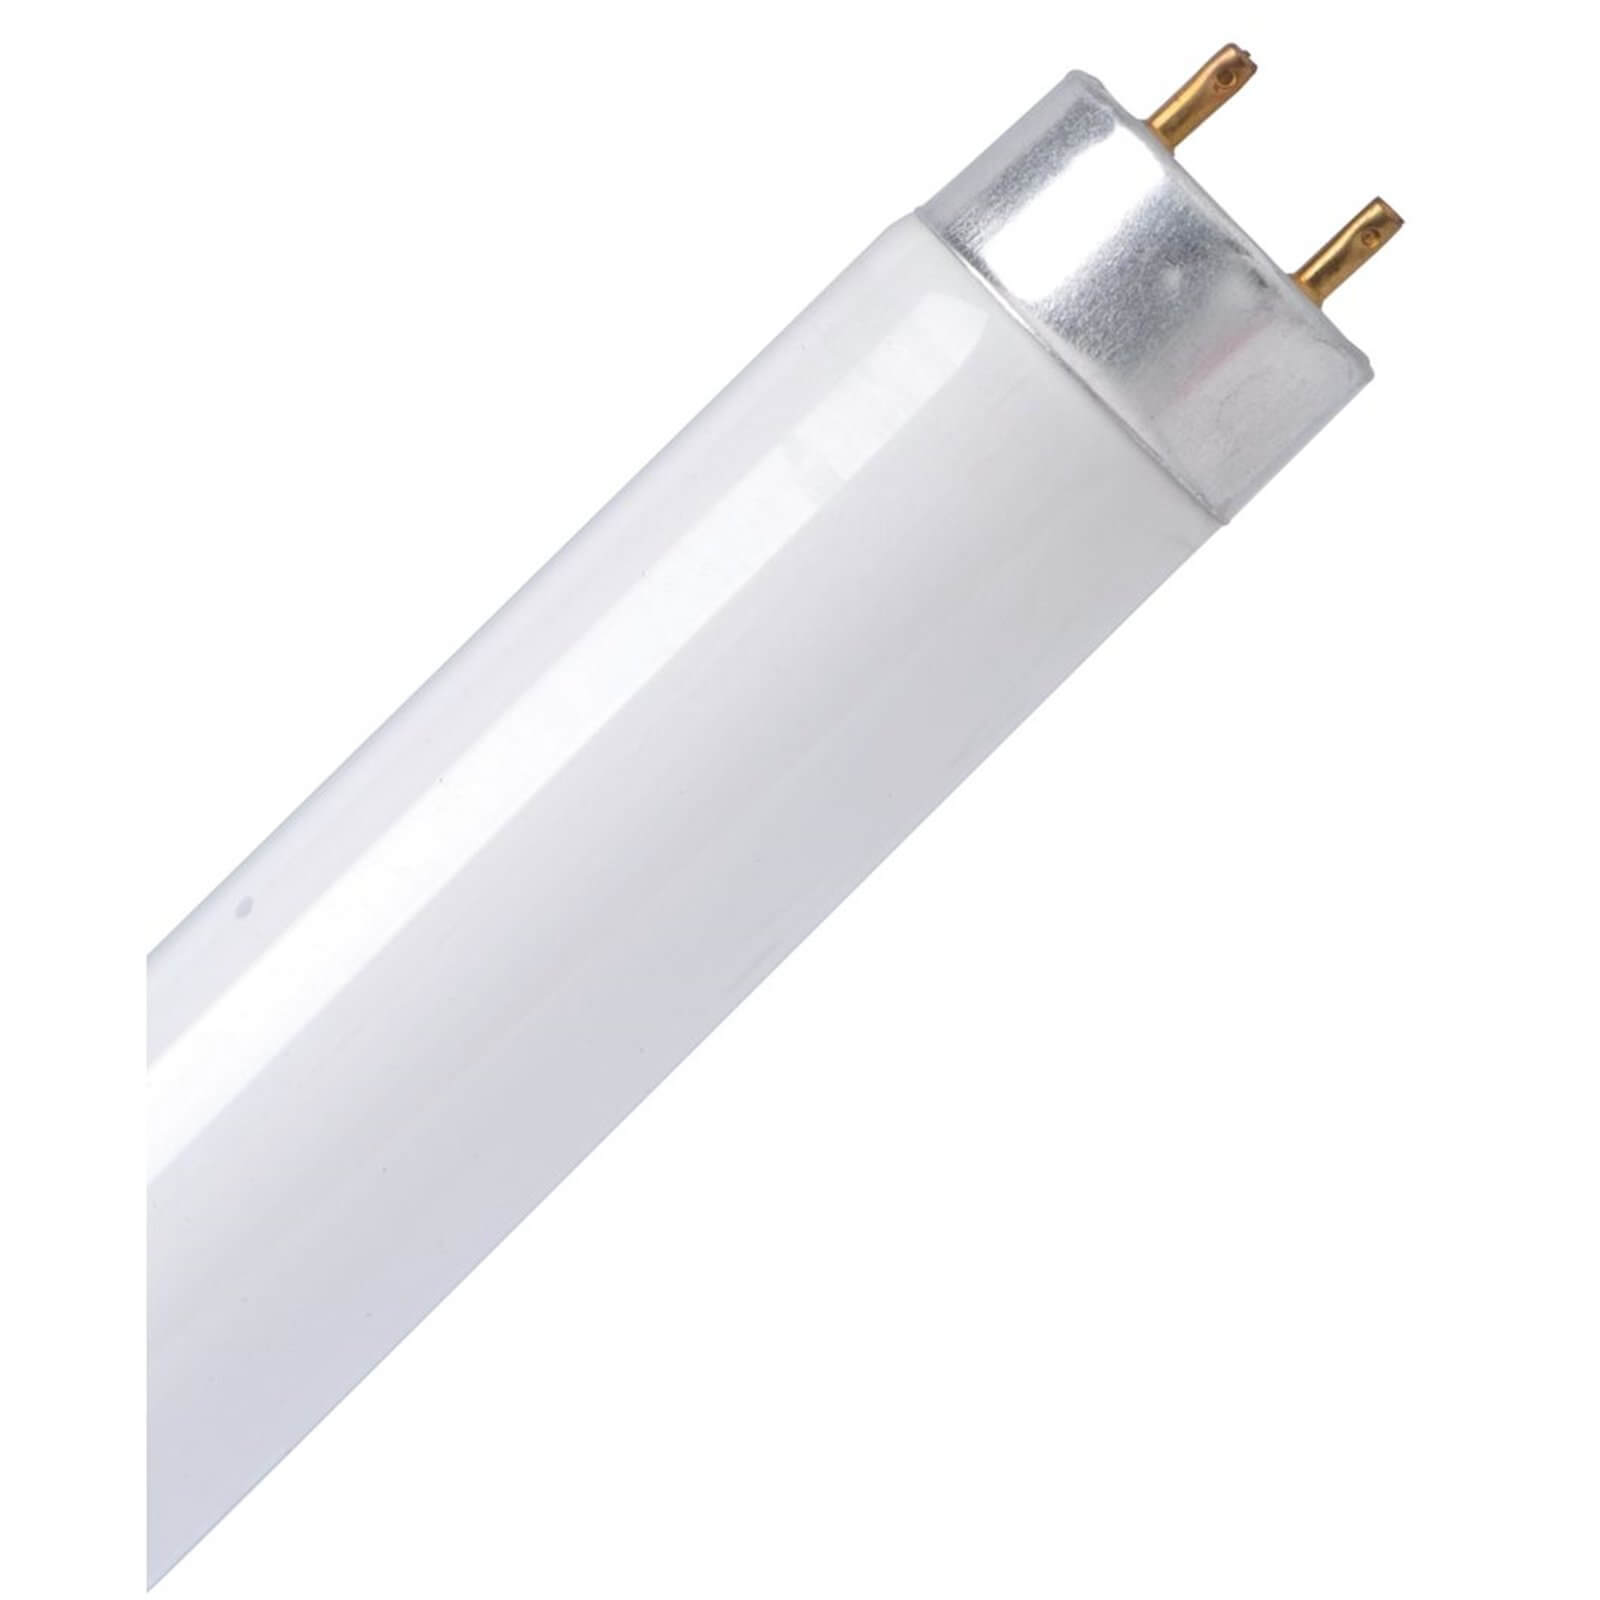 Energy Saver (CFL) Tube Cool White 0.6 18W Light Bulb